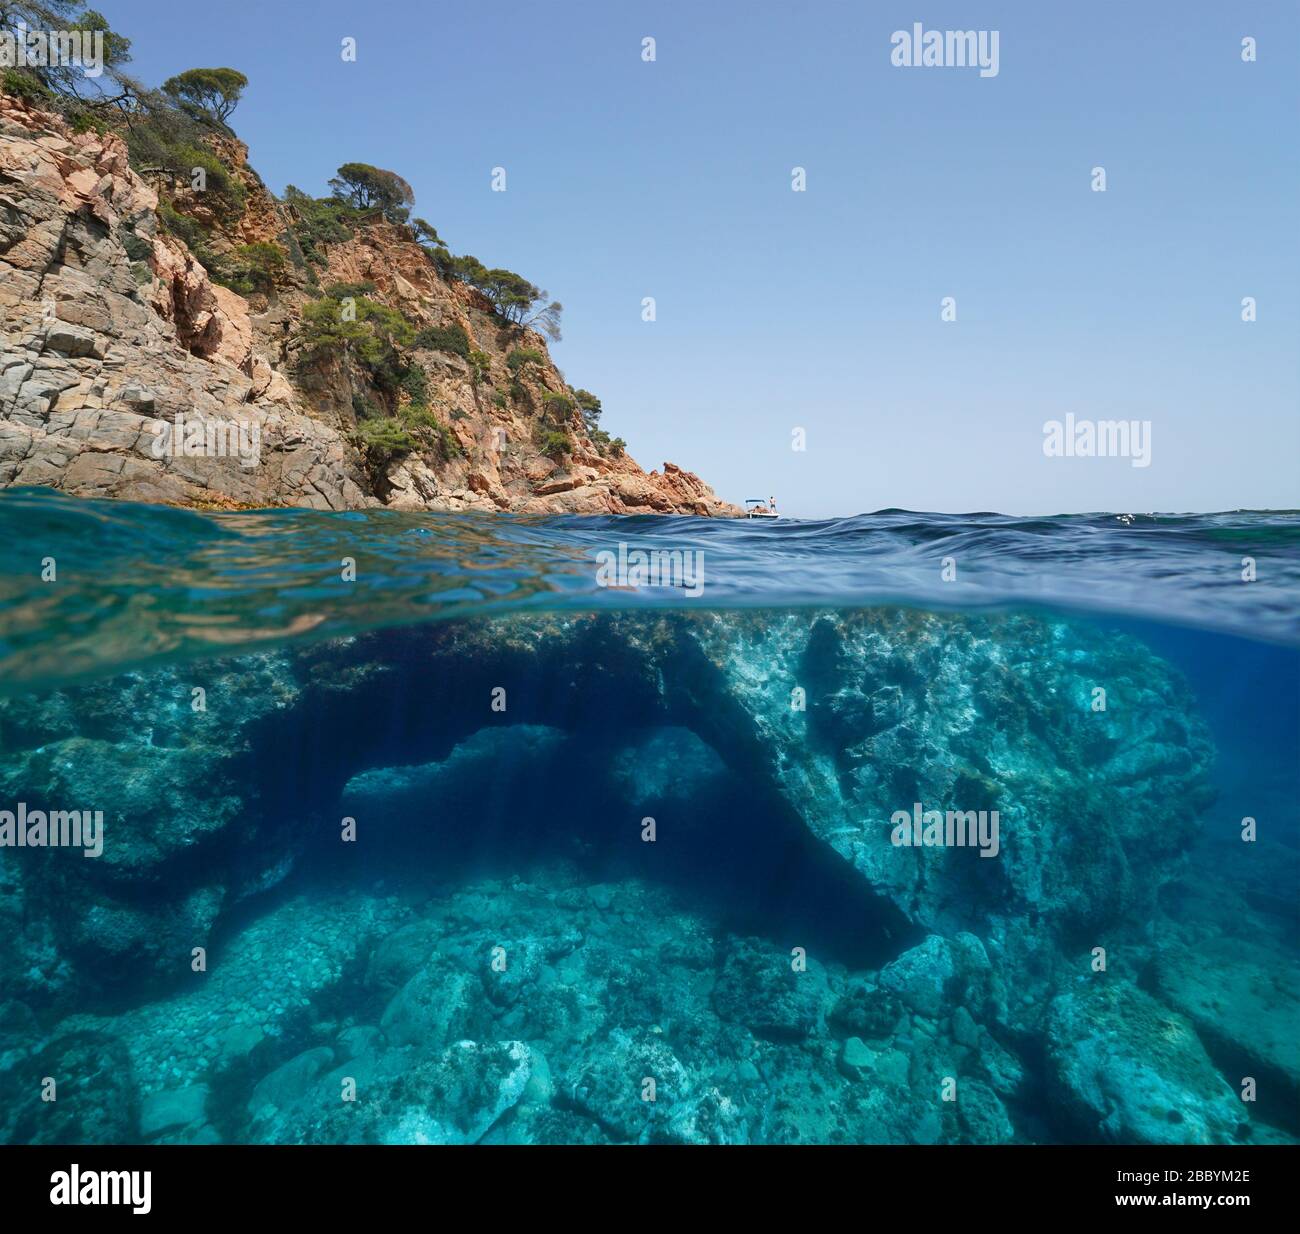 Costa rocciosa e grande roccia con un buco sott'acqua, vista su e sotto l'acqua, Mar Mediterraneo, Spagna, Costa Brava, Catalogna Foto Stock